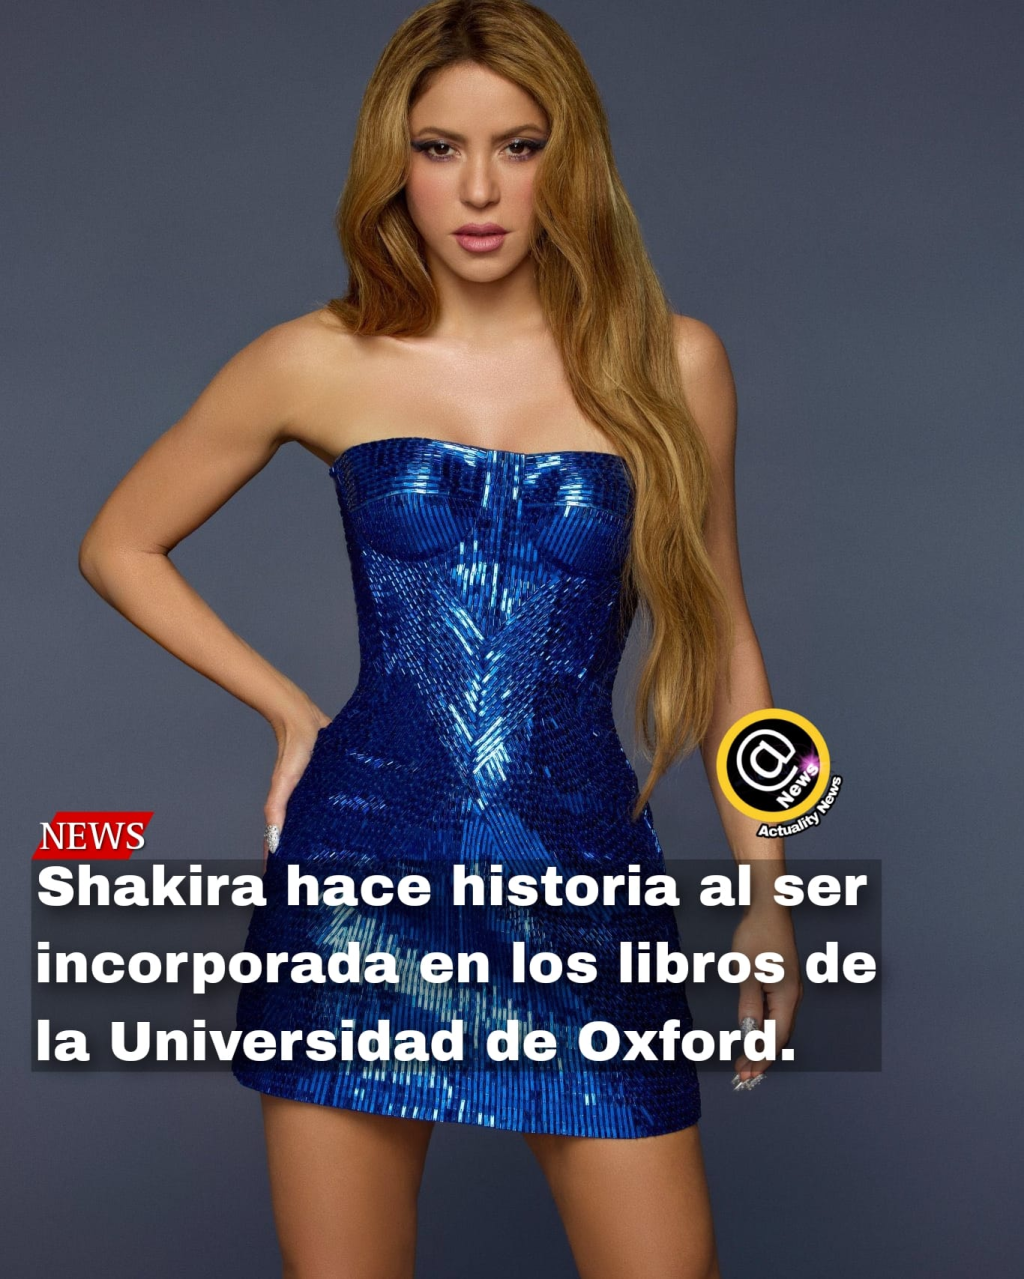 La relación de Shakira y la Universidad de Oxford : se convierte en bibliografía obligatoria dentro de la carrera de historia en los temas de «Estudios Latinos».